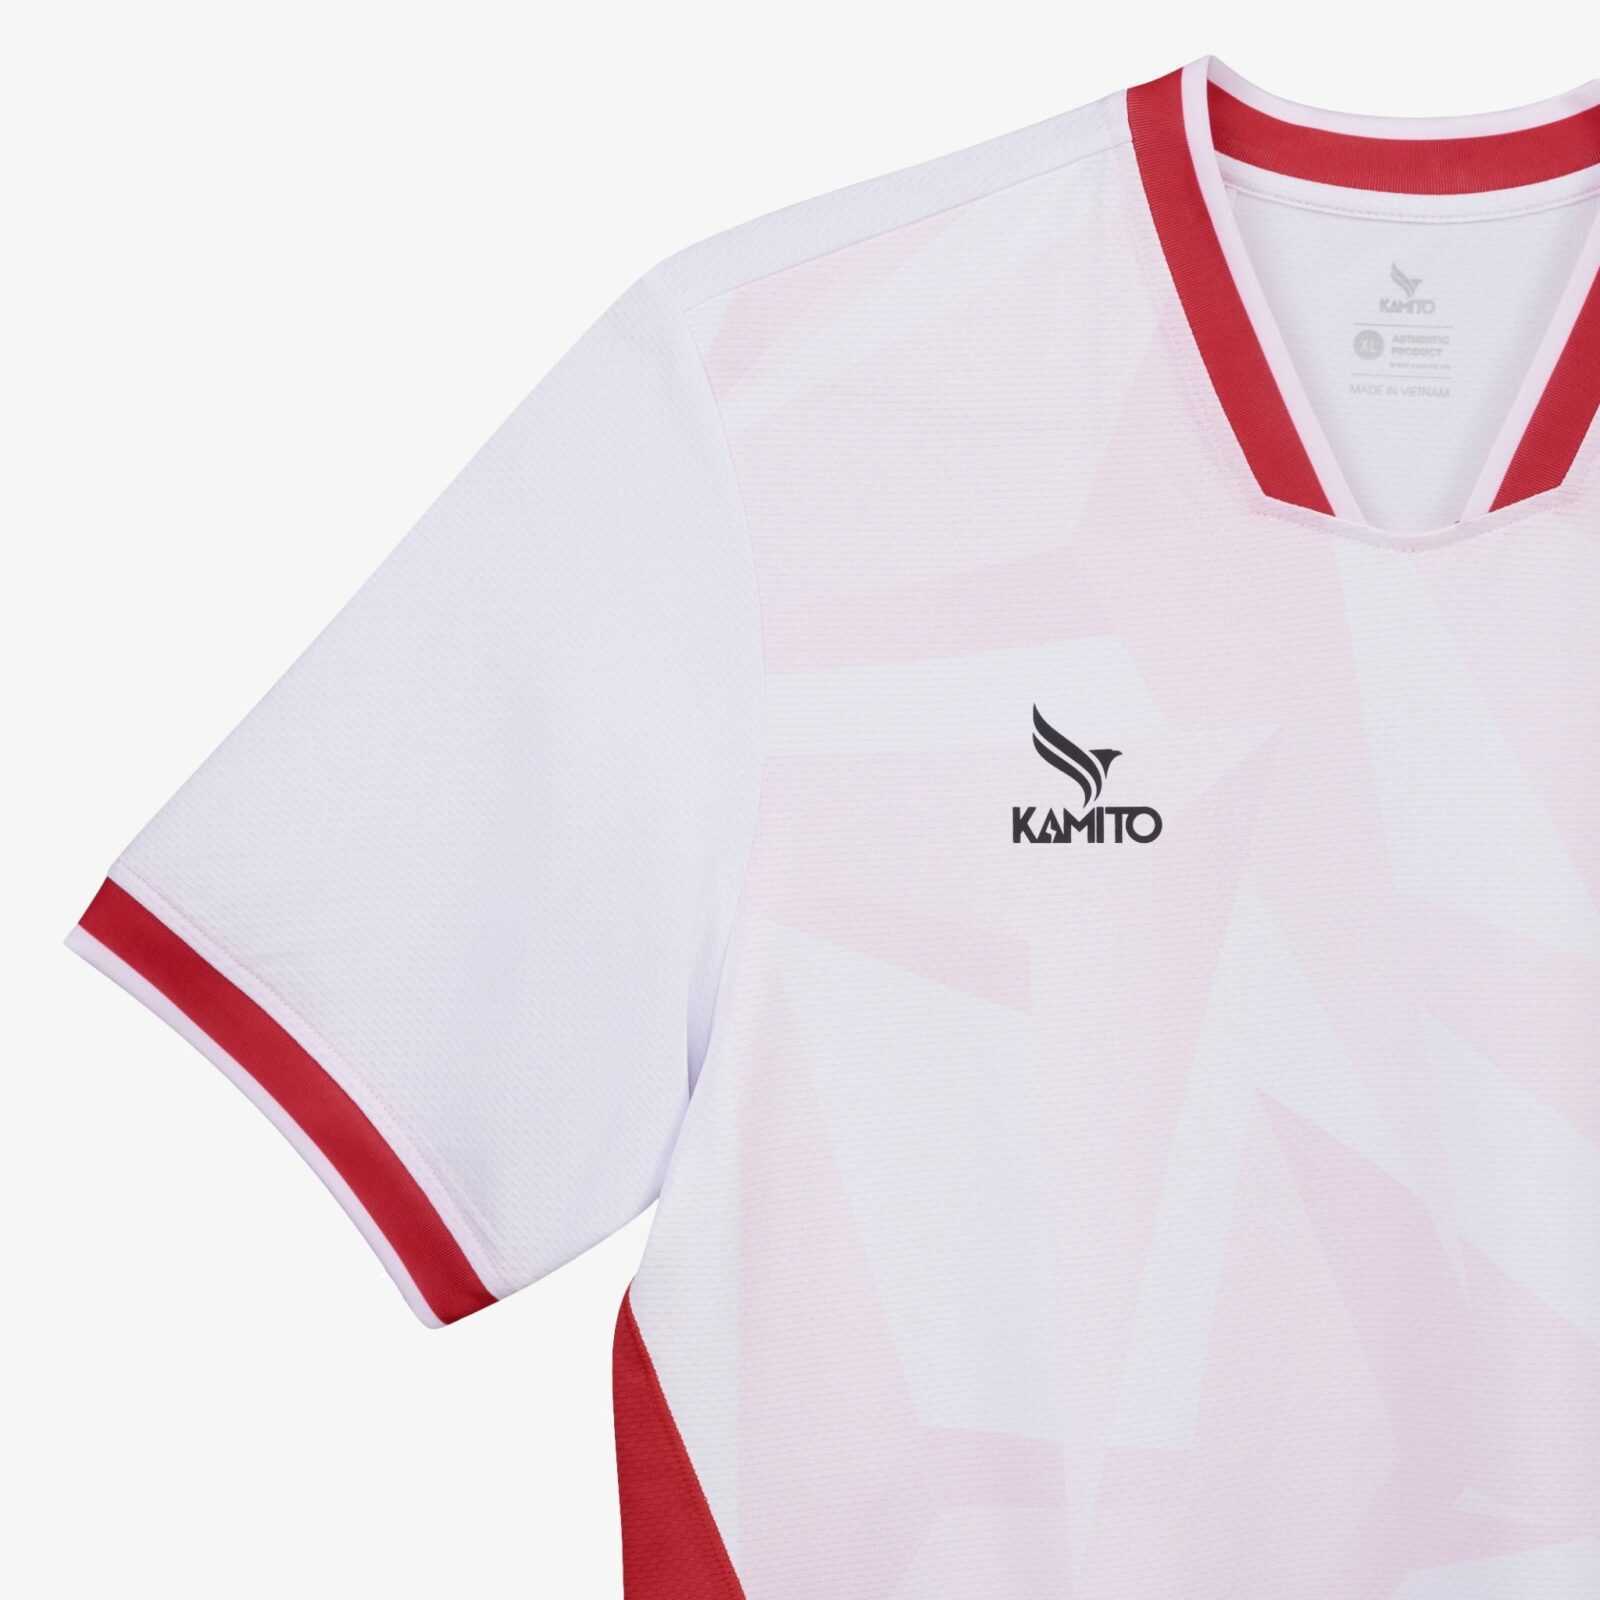 Bộ quần áo đá banh mẫu thiết kế câu lạc bộ bóng đá Công An Hà Nội CAHN bản trơn không in ấn chính hãng Kamito màu đỏ